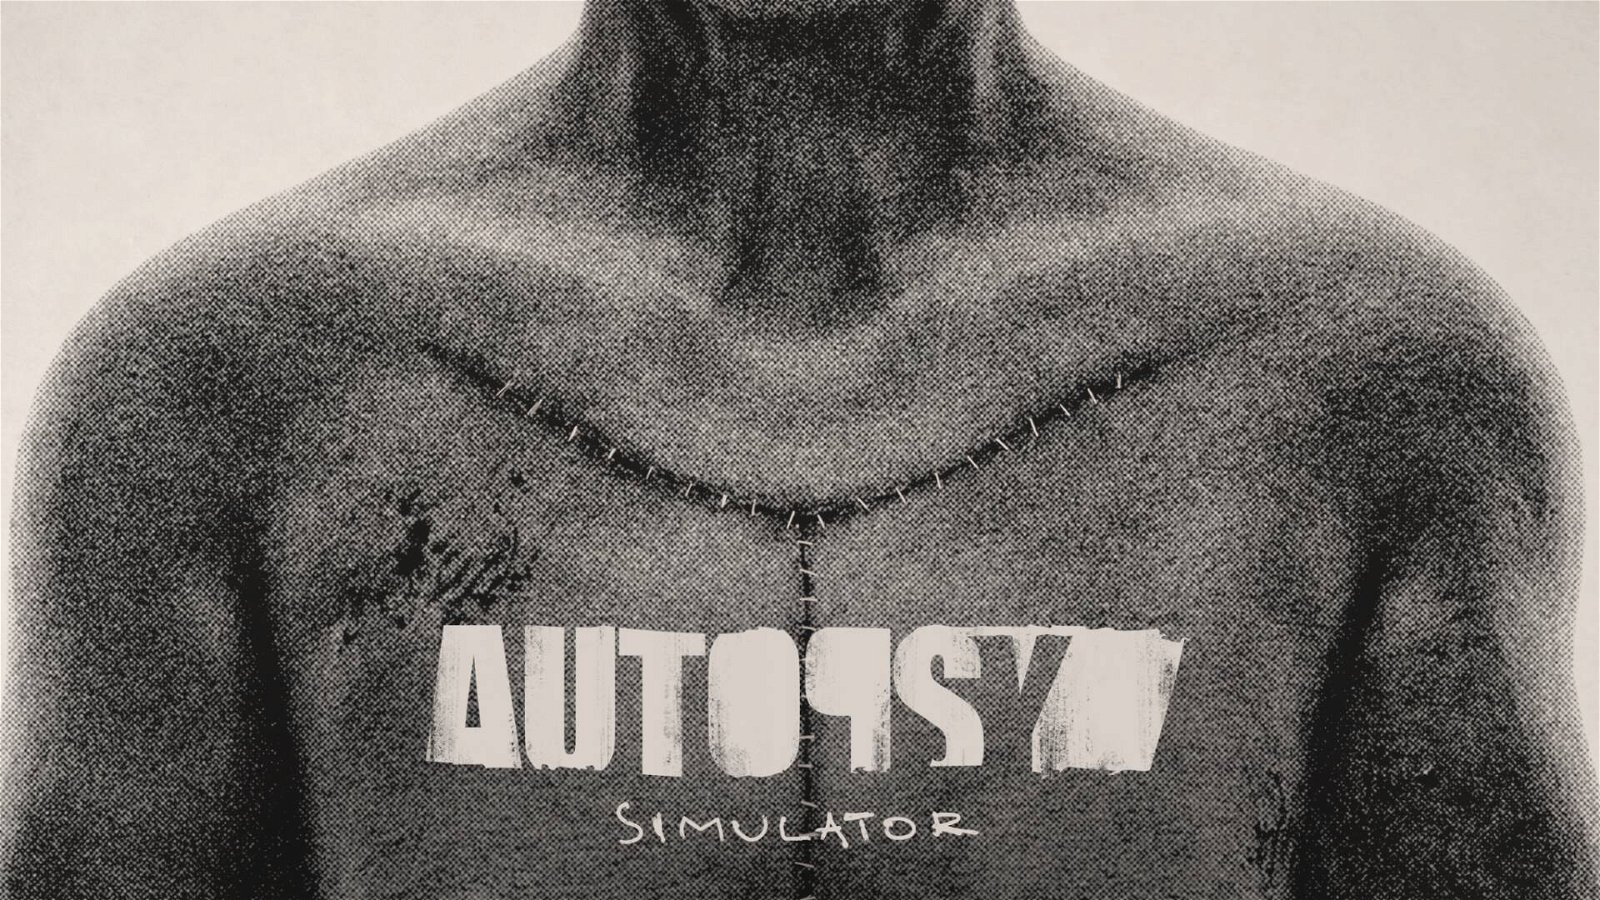 Tra i giochi più strambi di questi giorni c'è anche il simulatore (realistico) di autopsie